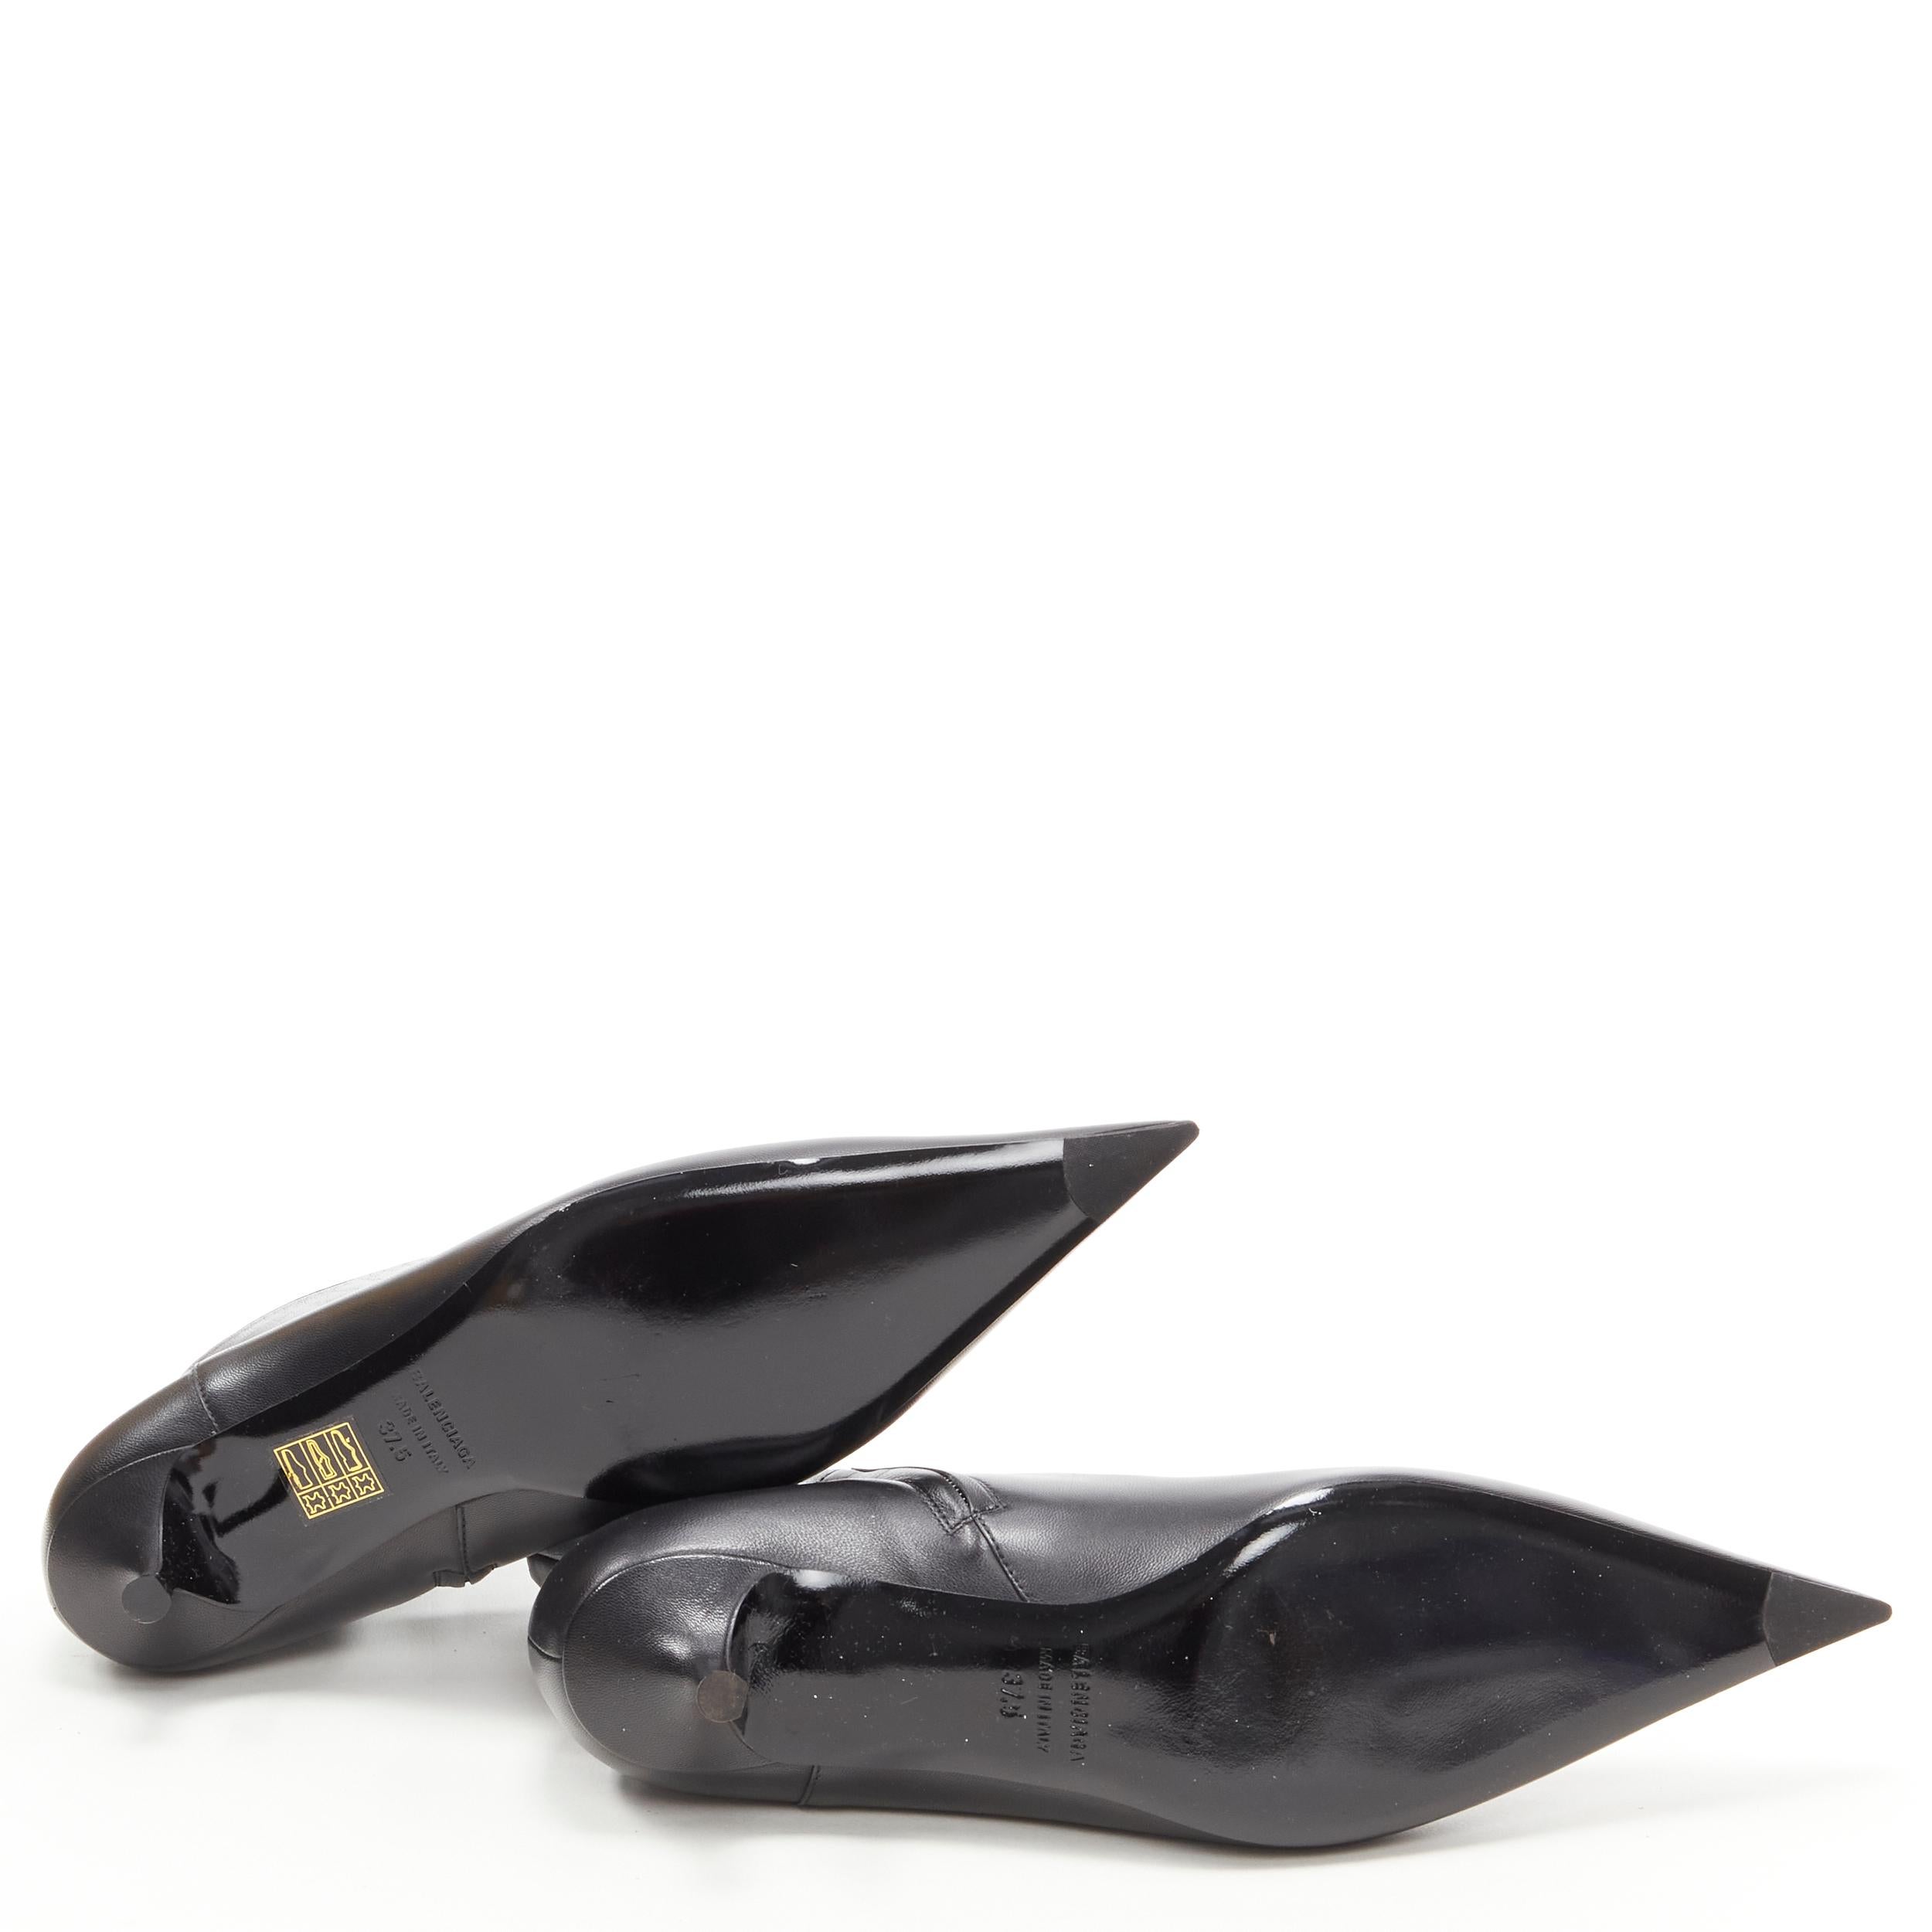 new BALENCIAGA Knife black calfskin leather kitten heel bootie EU37.5 US7.5 5